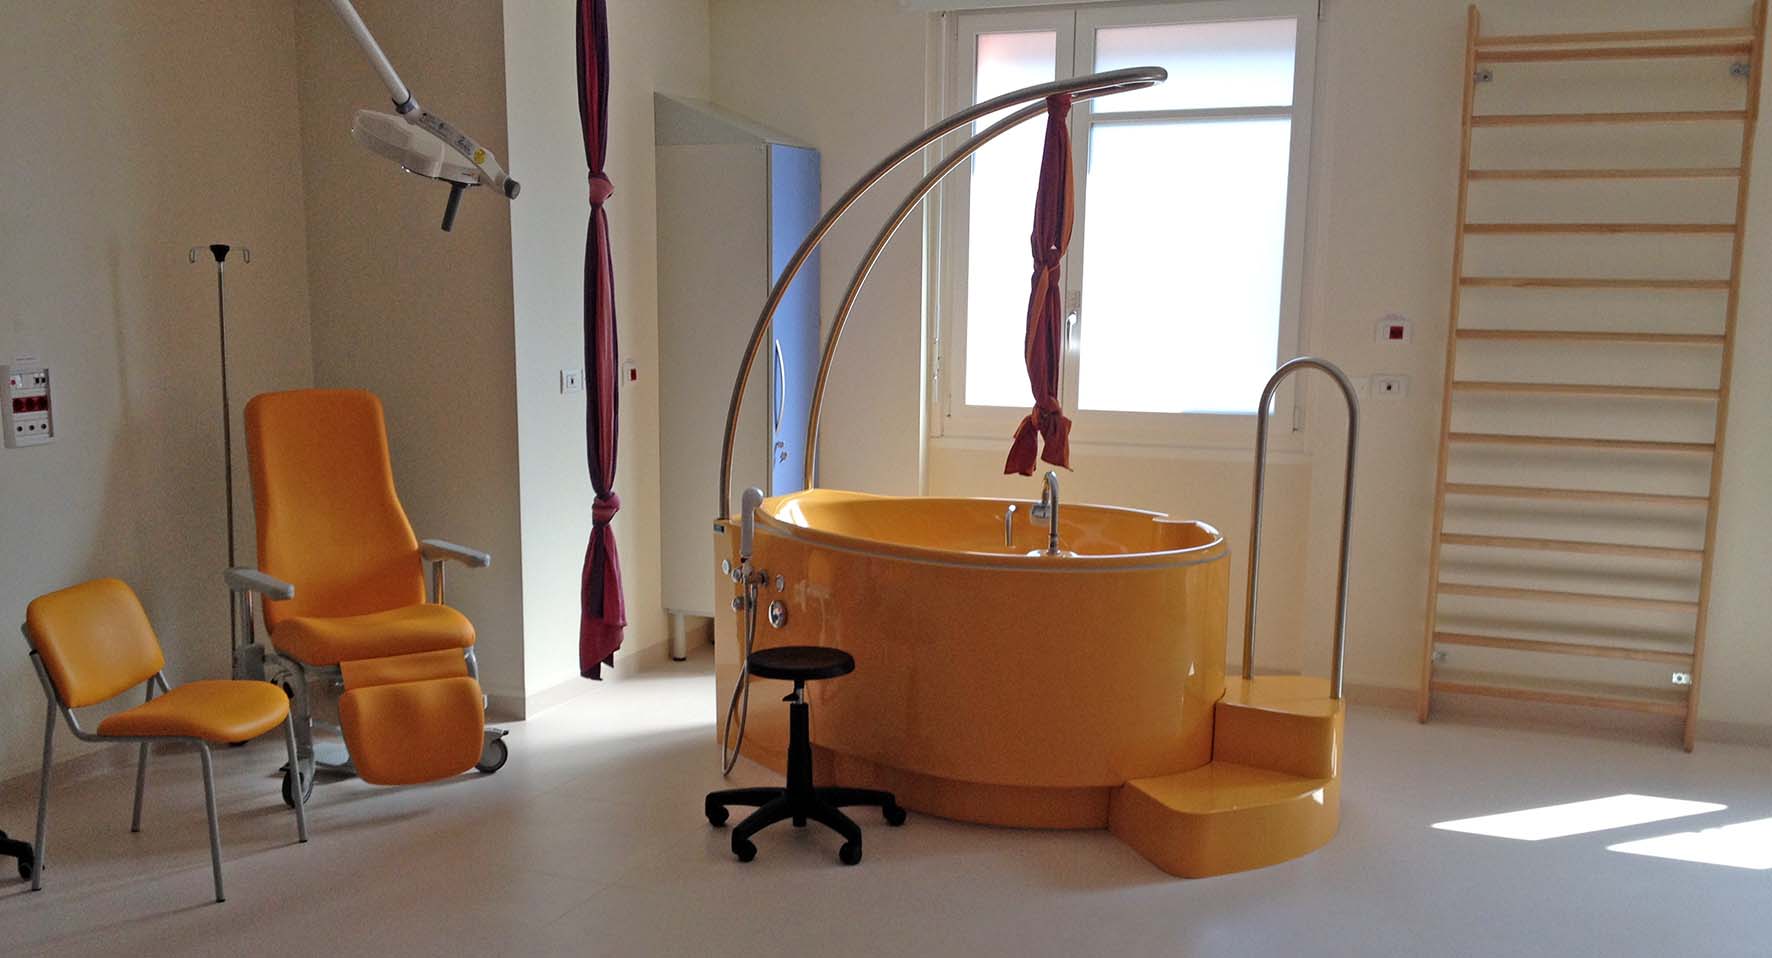 Ospedale rovereto nuovo reparto parto vasca parto in acqua